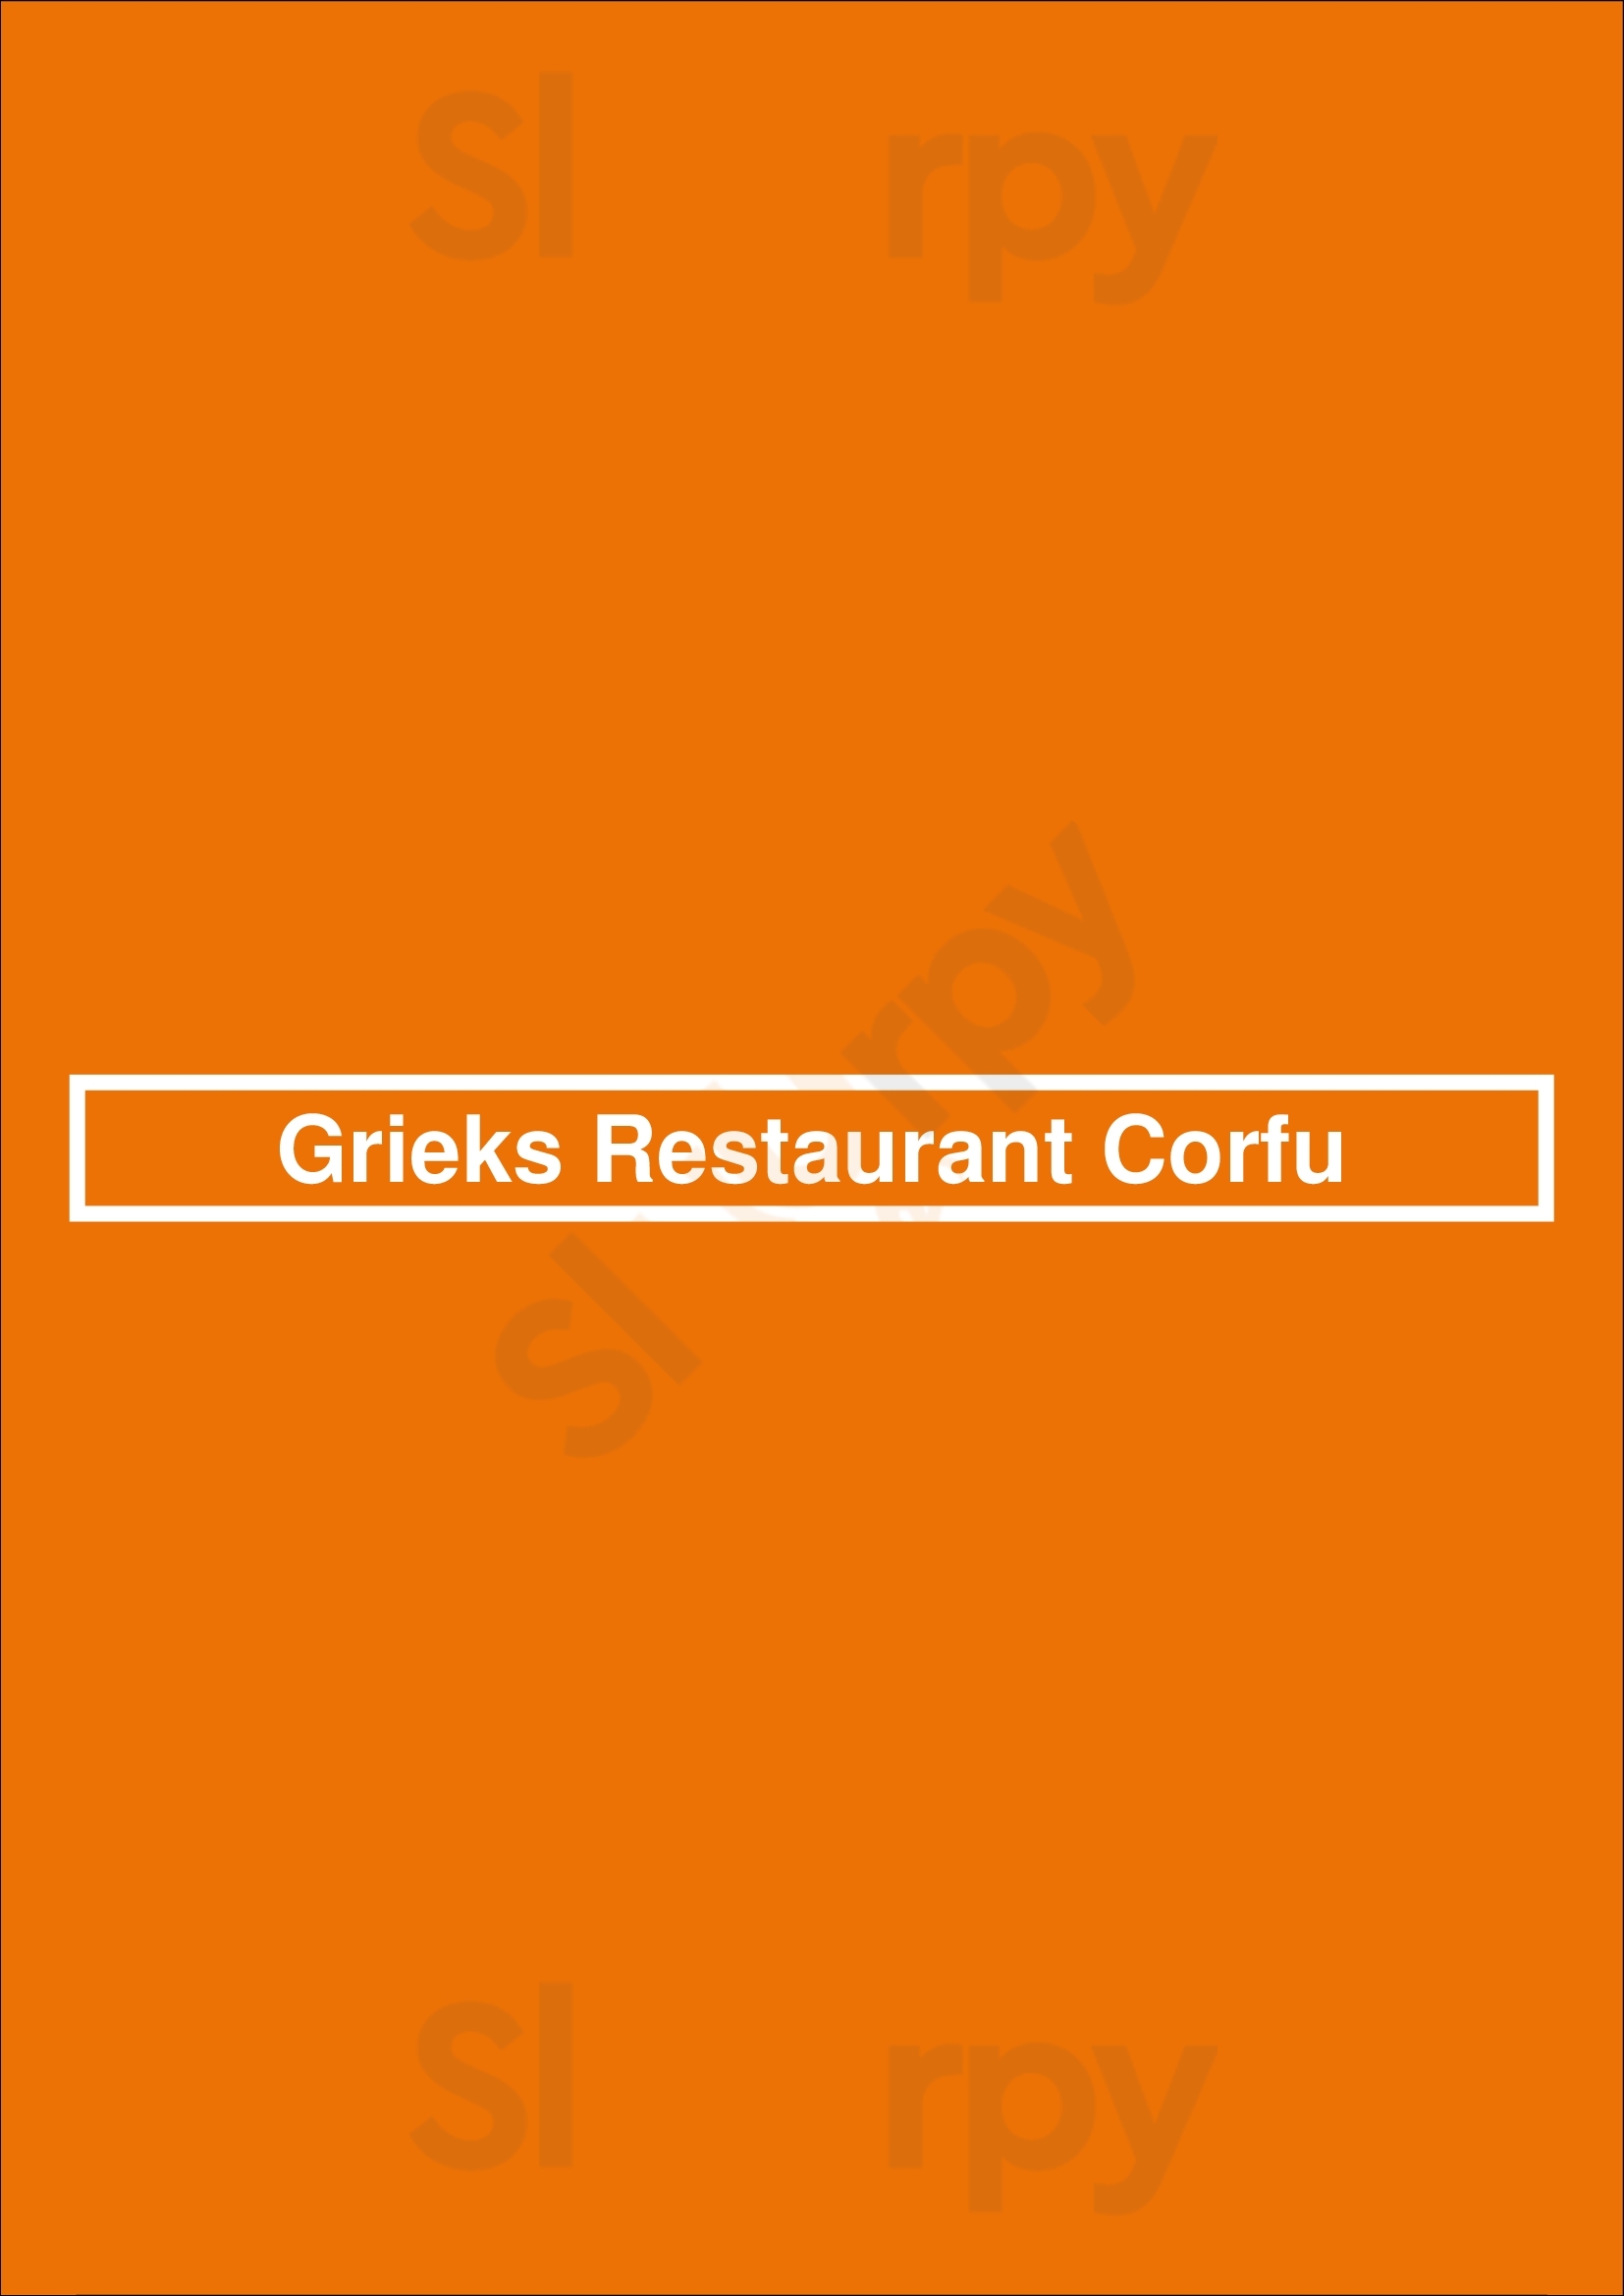 Grieks Restaurant Corfu Venray Menu - 1